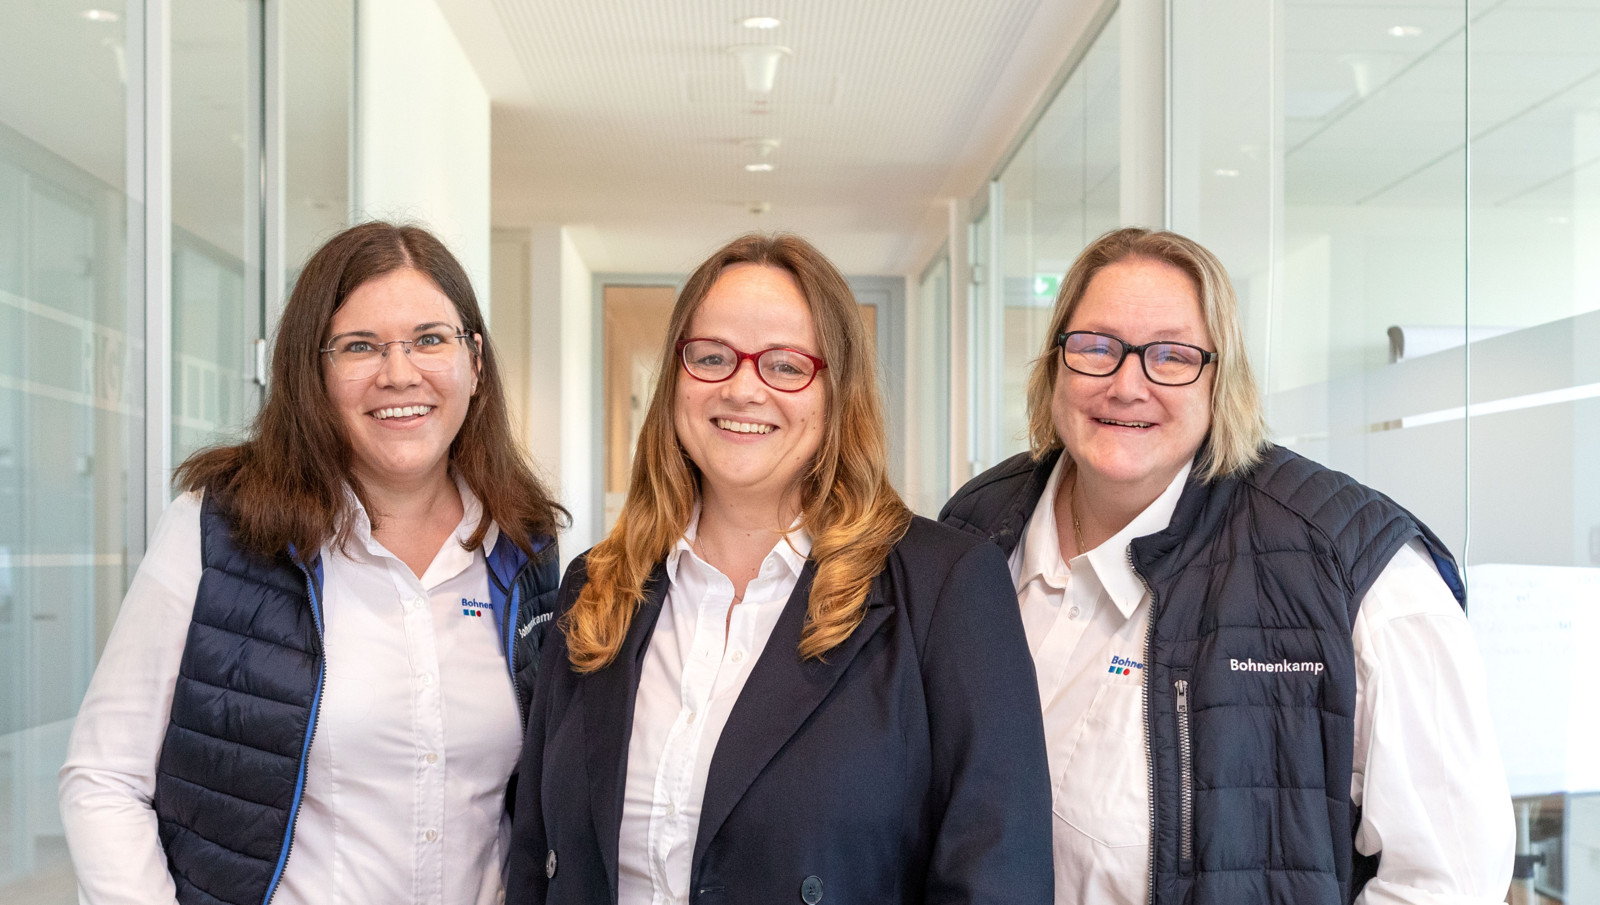 Caronila Niehaus (v.l.), Karen Beck und Sandra Ueding kümmern sich bei Bohnenkamp um die Altreifenverwertung.